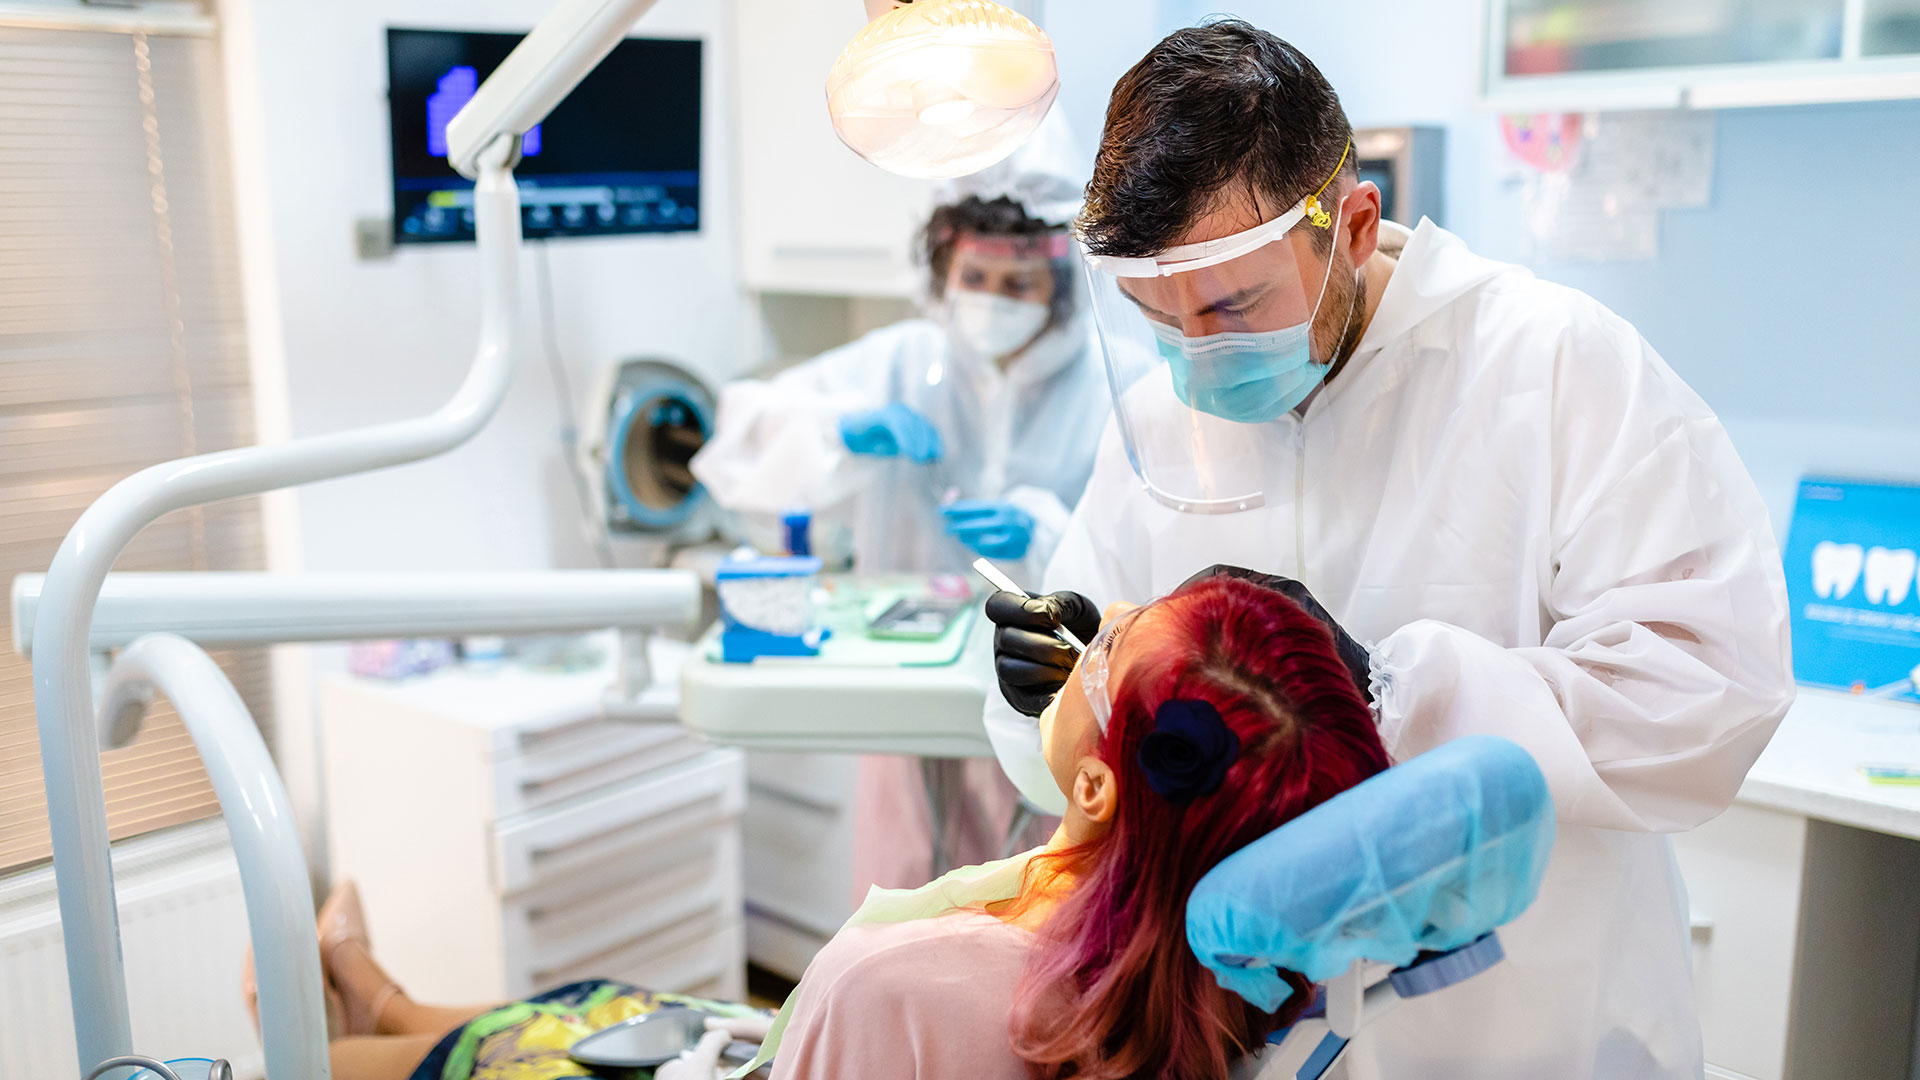 El control periódico en el dentista ayuda a prevenir caries (Getty Images)